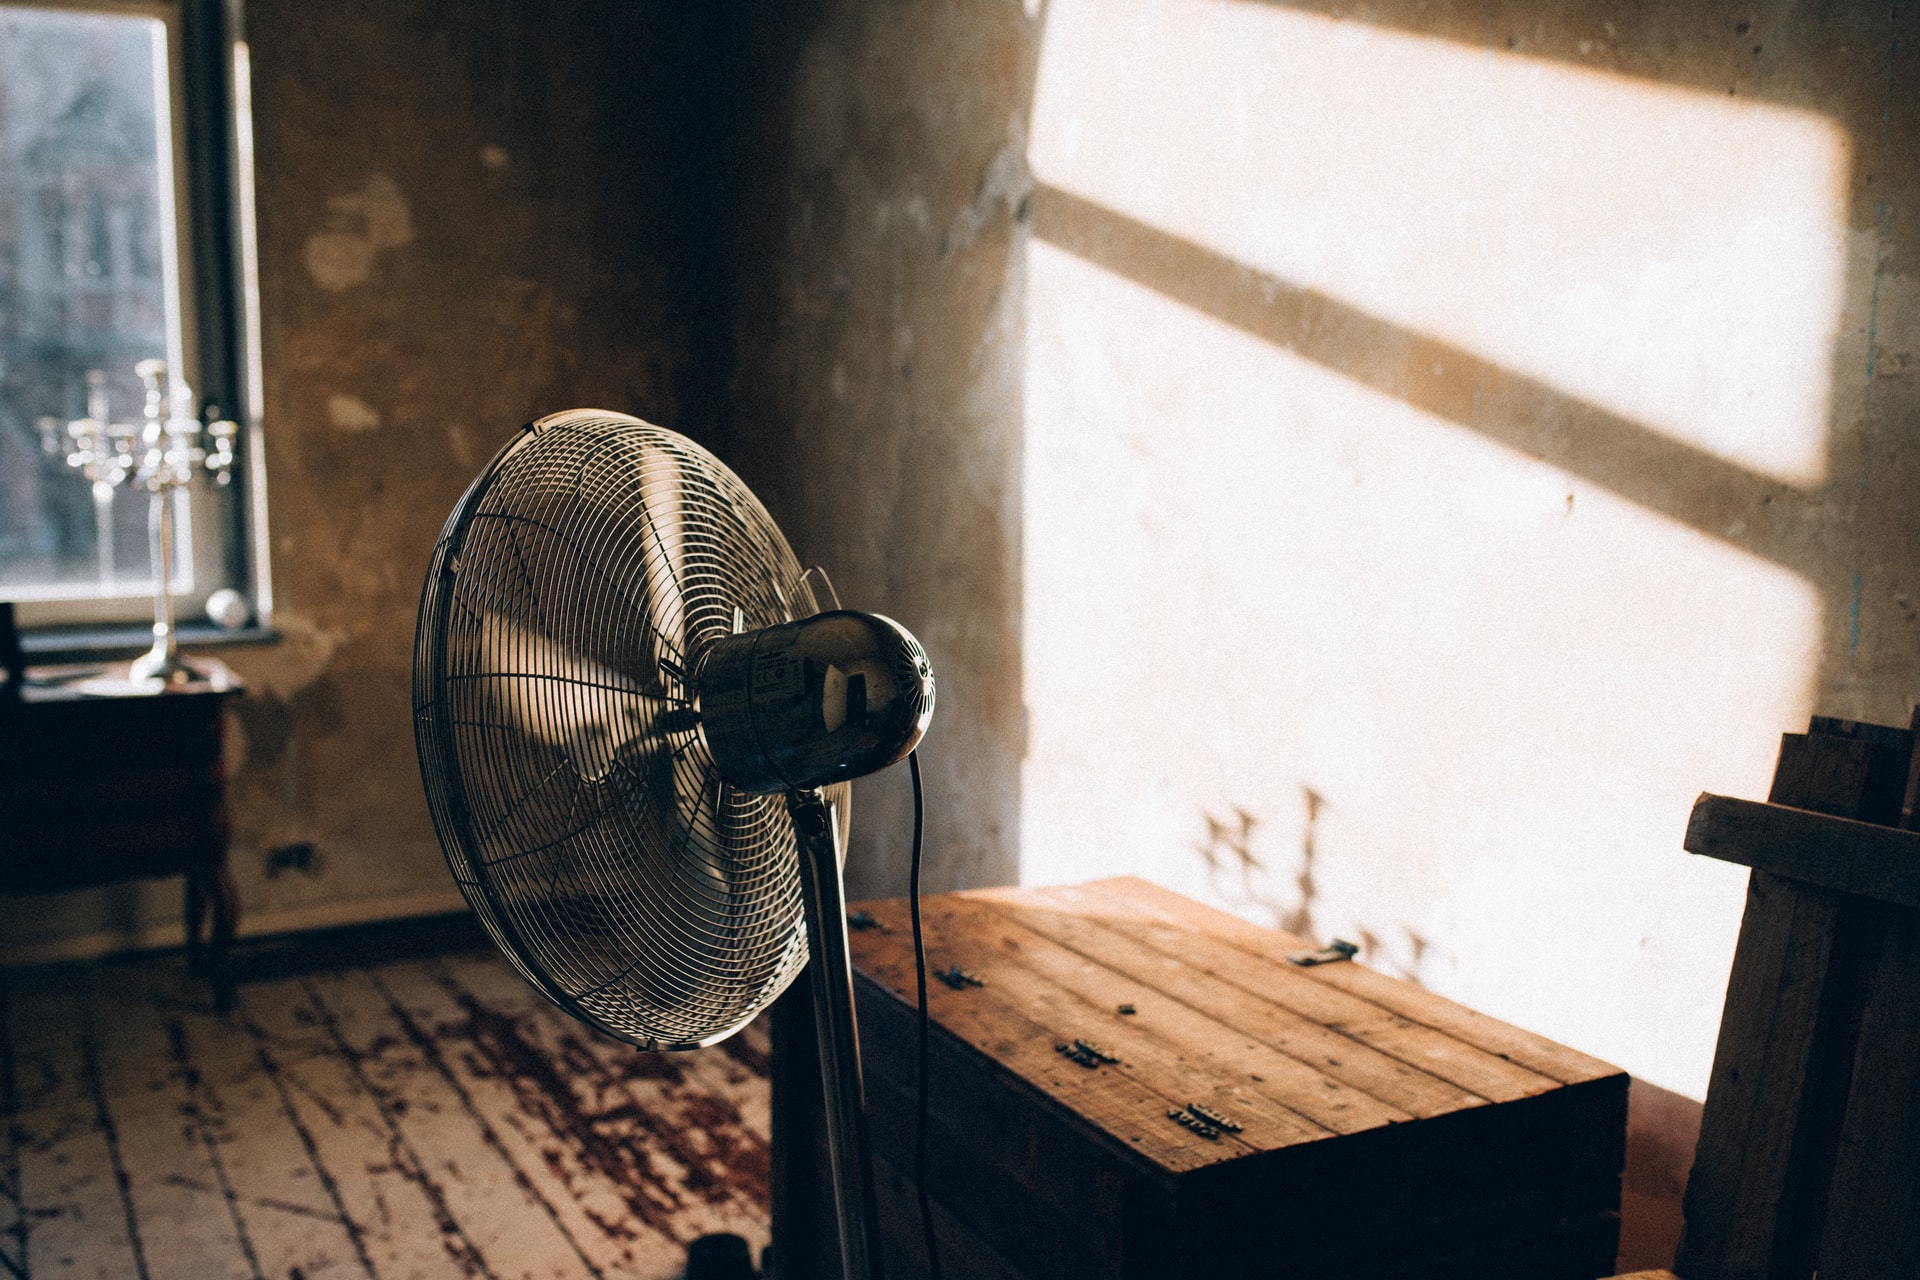 Electric fan in a sun-lit room